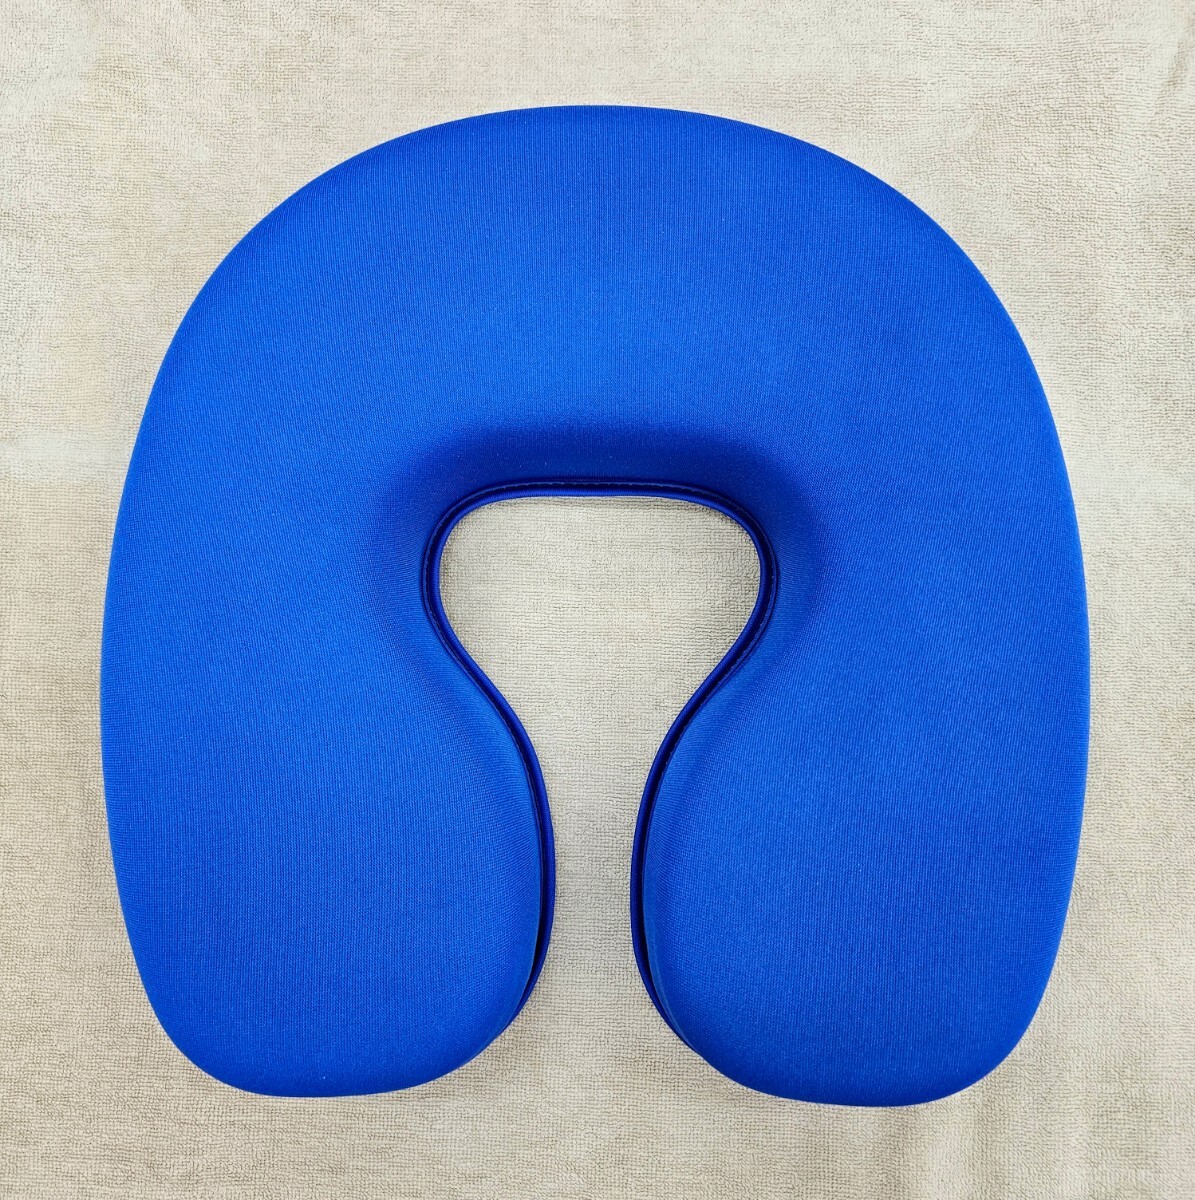  gel face TB-77-63 gel pillow face pillow .... pillow face ... integer body pillow massage pillow takada bed blue blue 